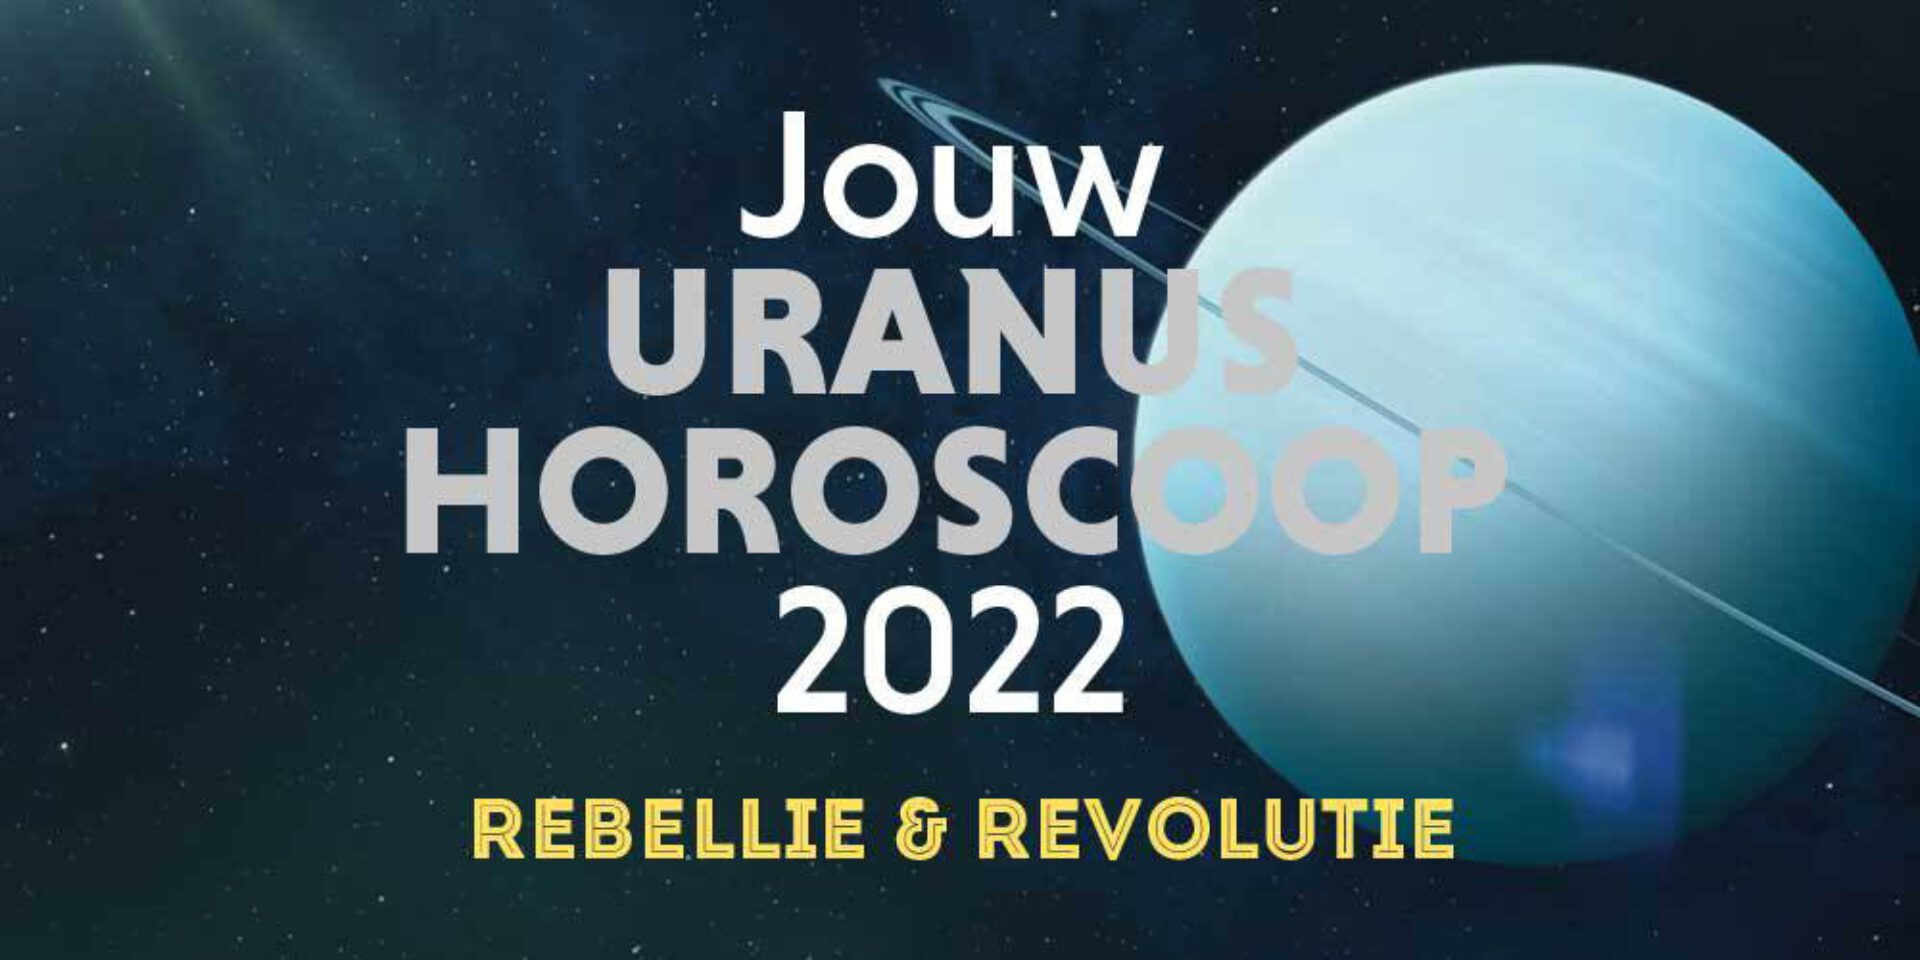 Jouw Uranushoroscoop 2022: rebellie & revolutie